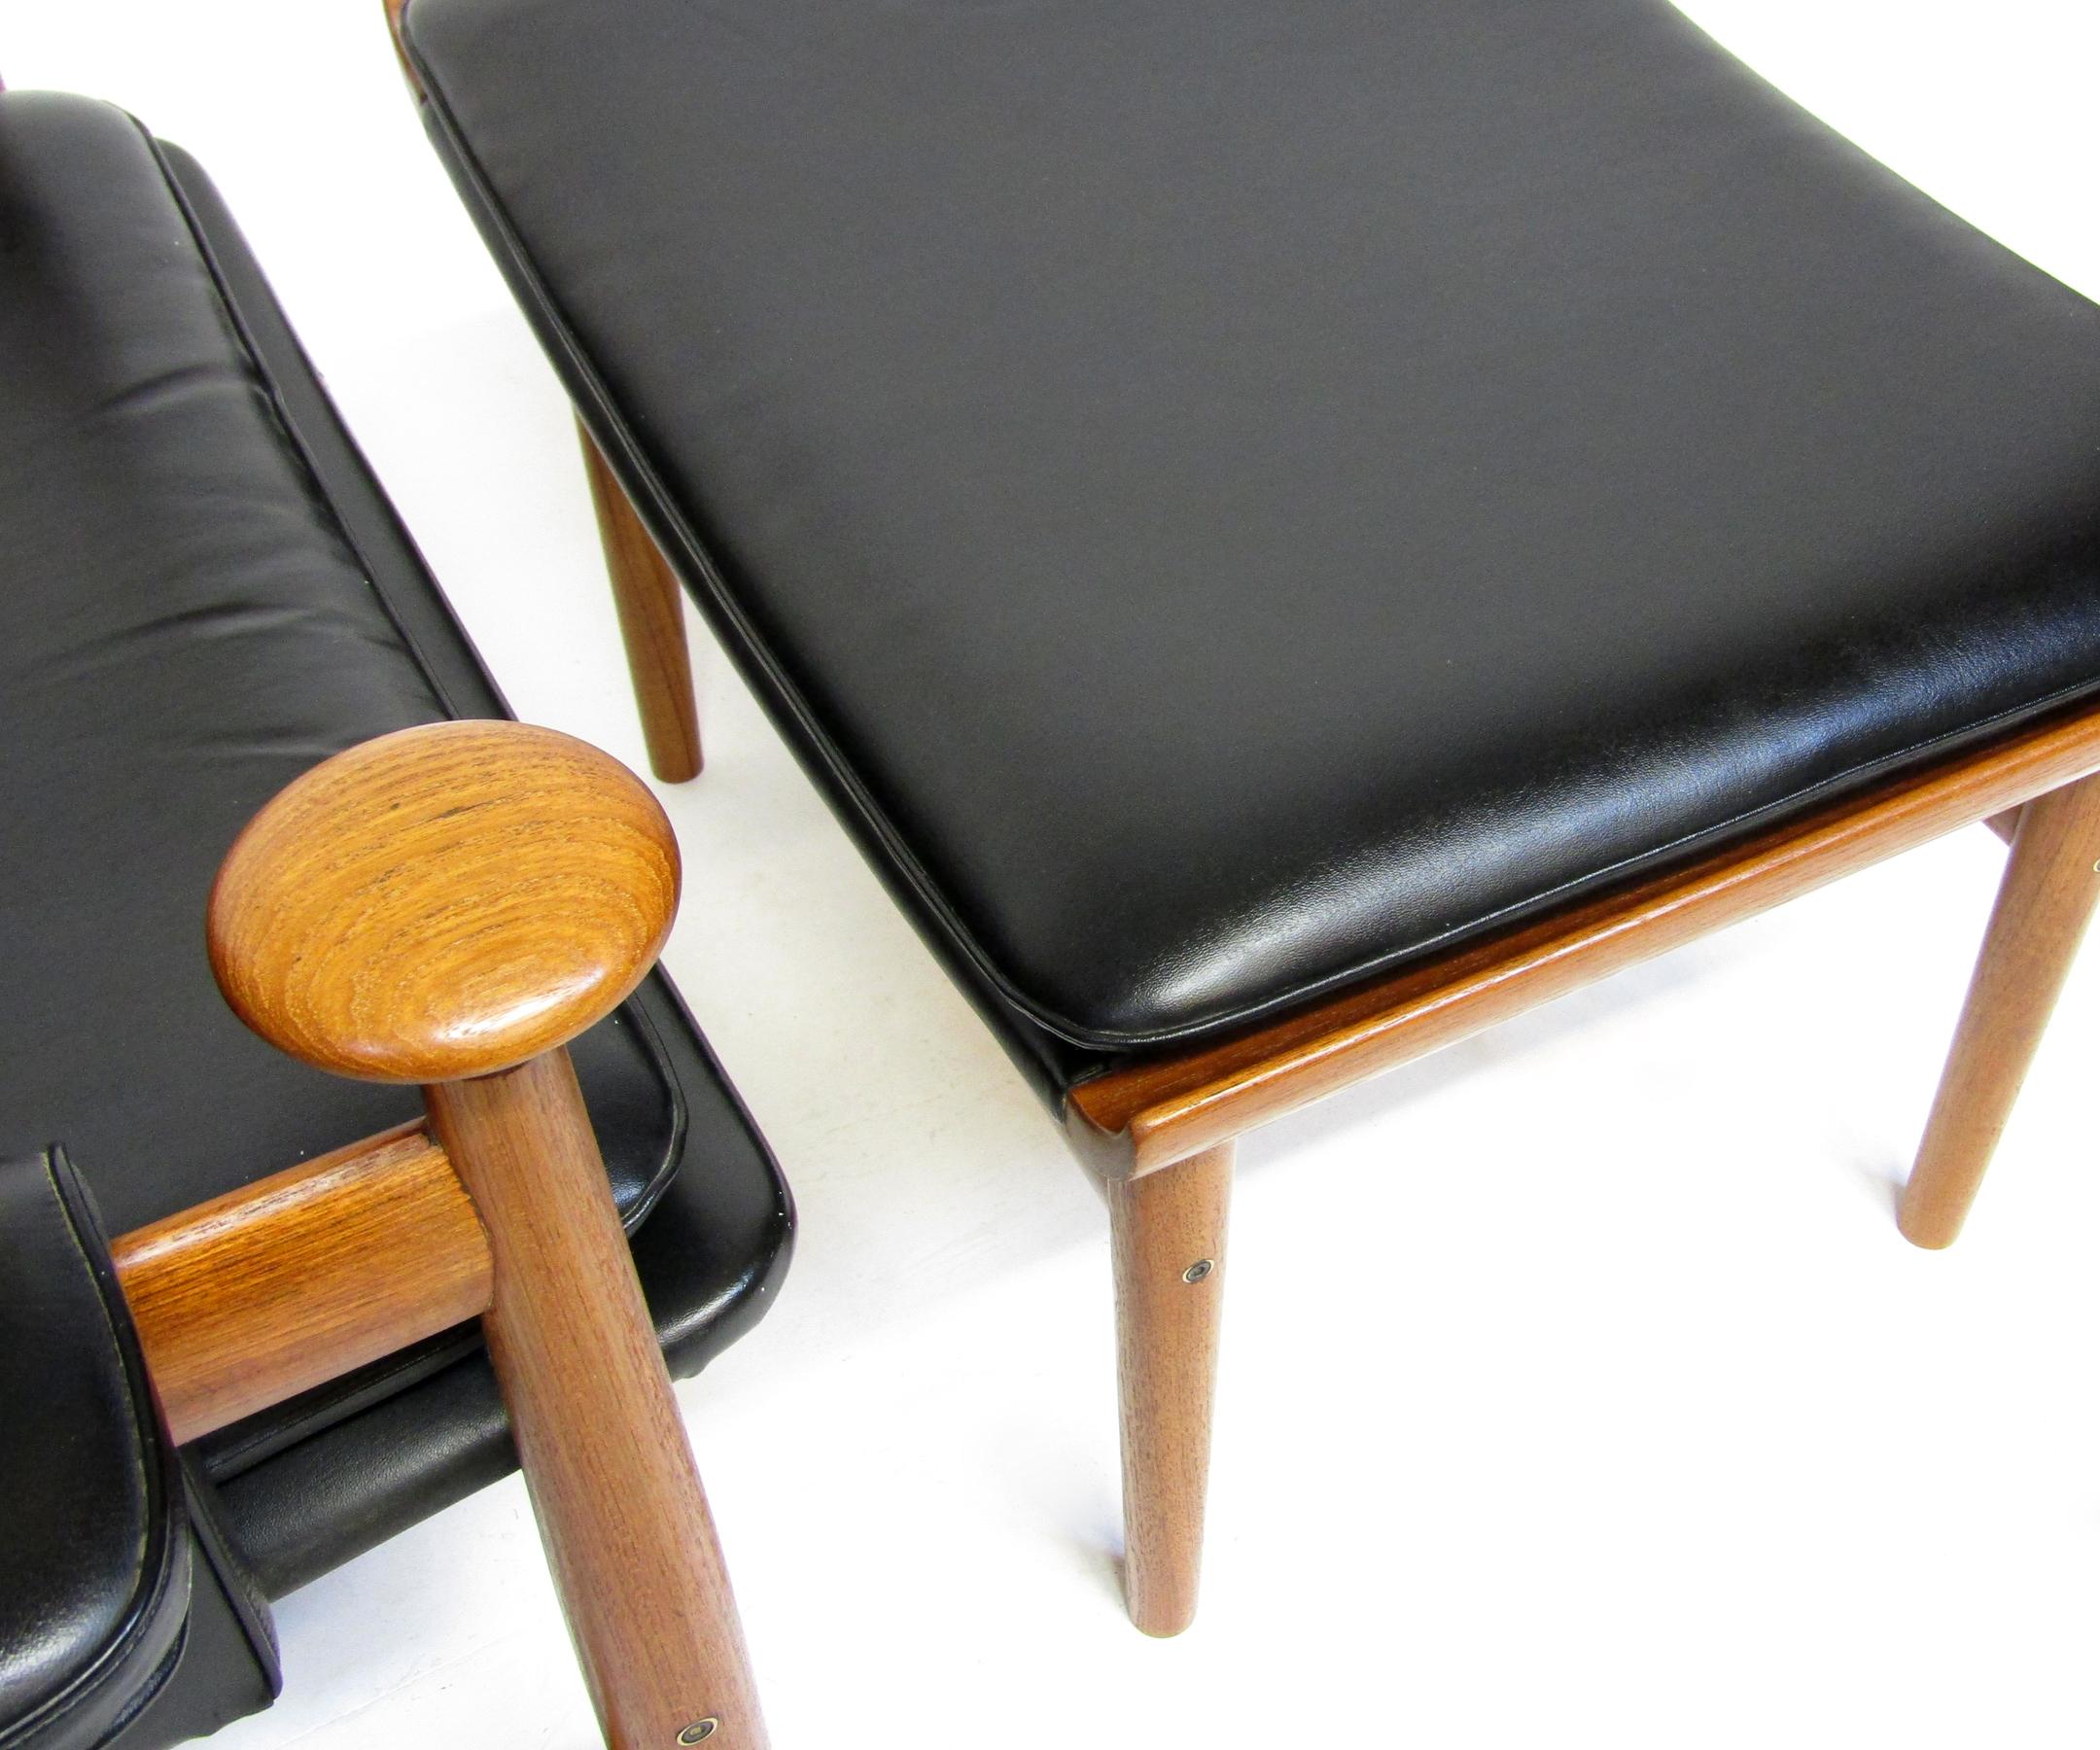 1960s Danish Bwana Chair & Ottoman By Finn Juhl In Teak & Skai For Sale 4